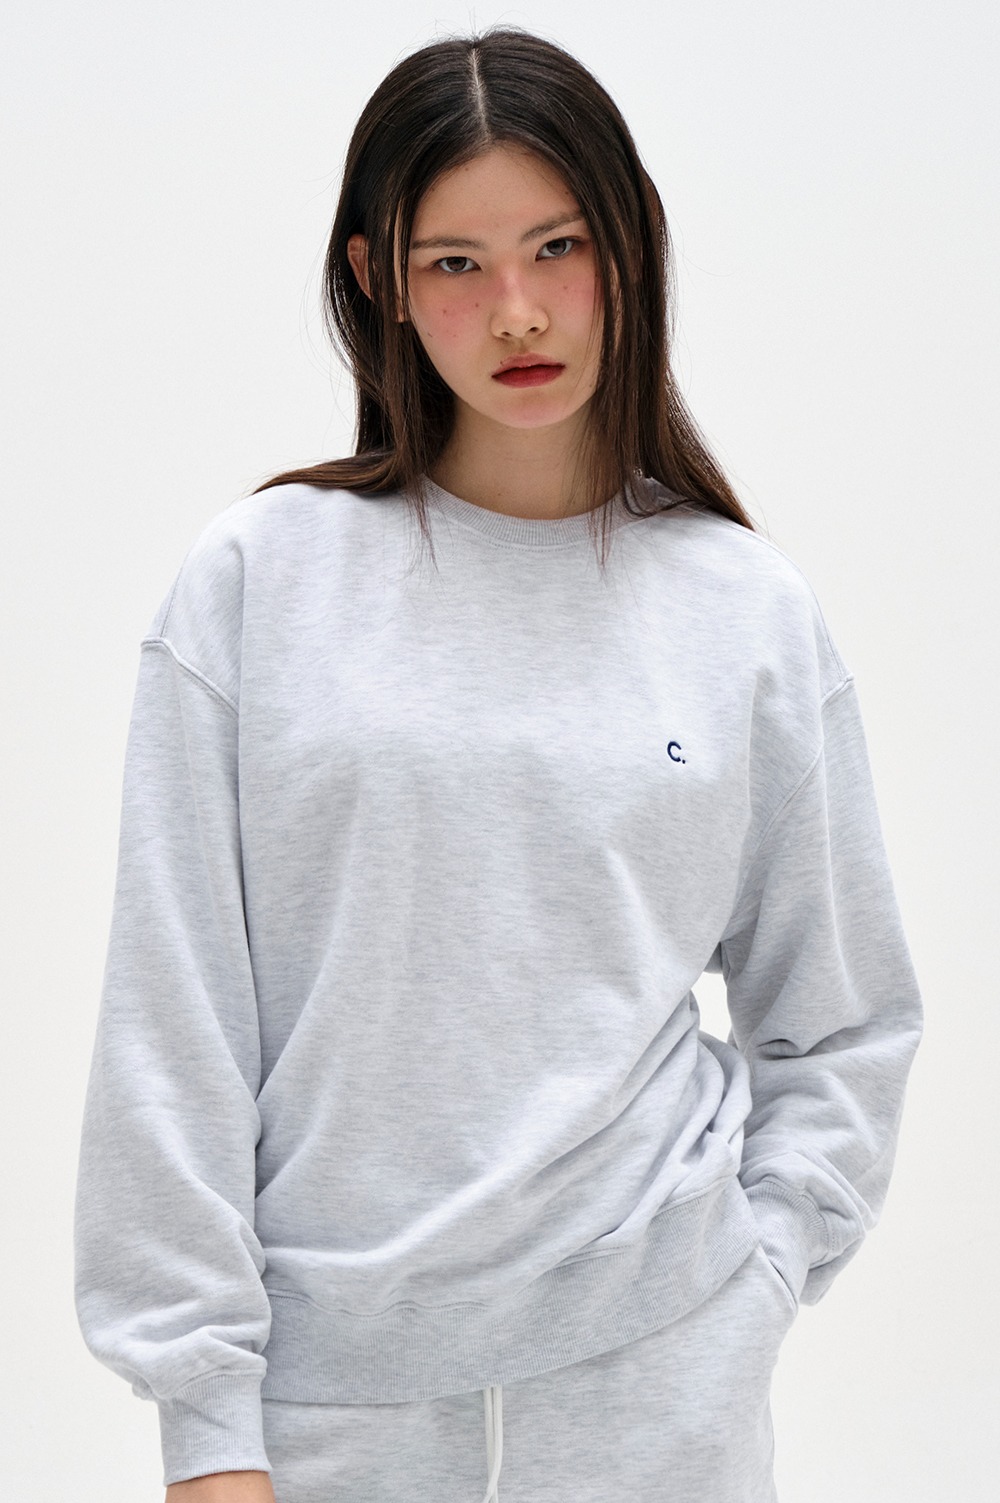 clove - New Active Sweatshirt_Women (Light Grey)